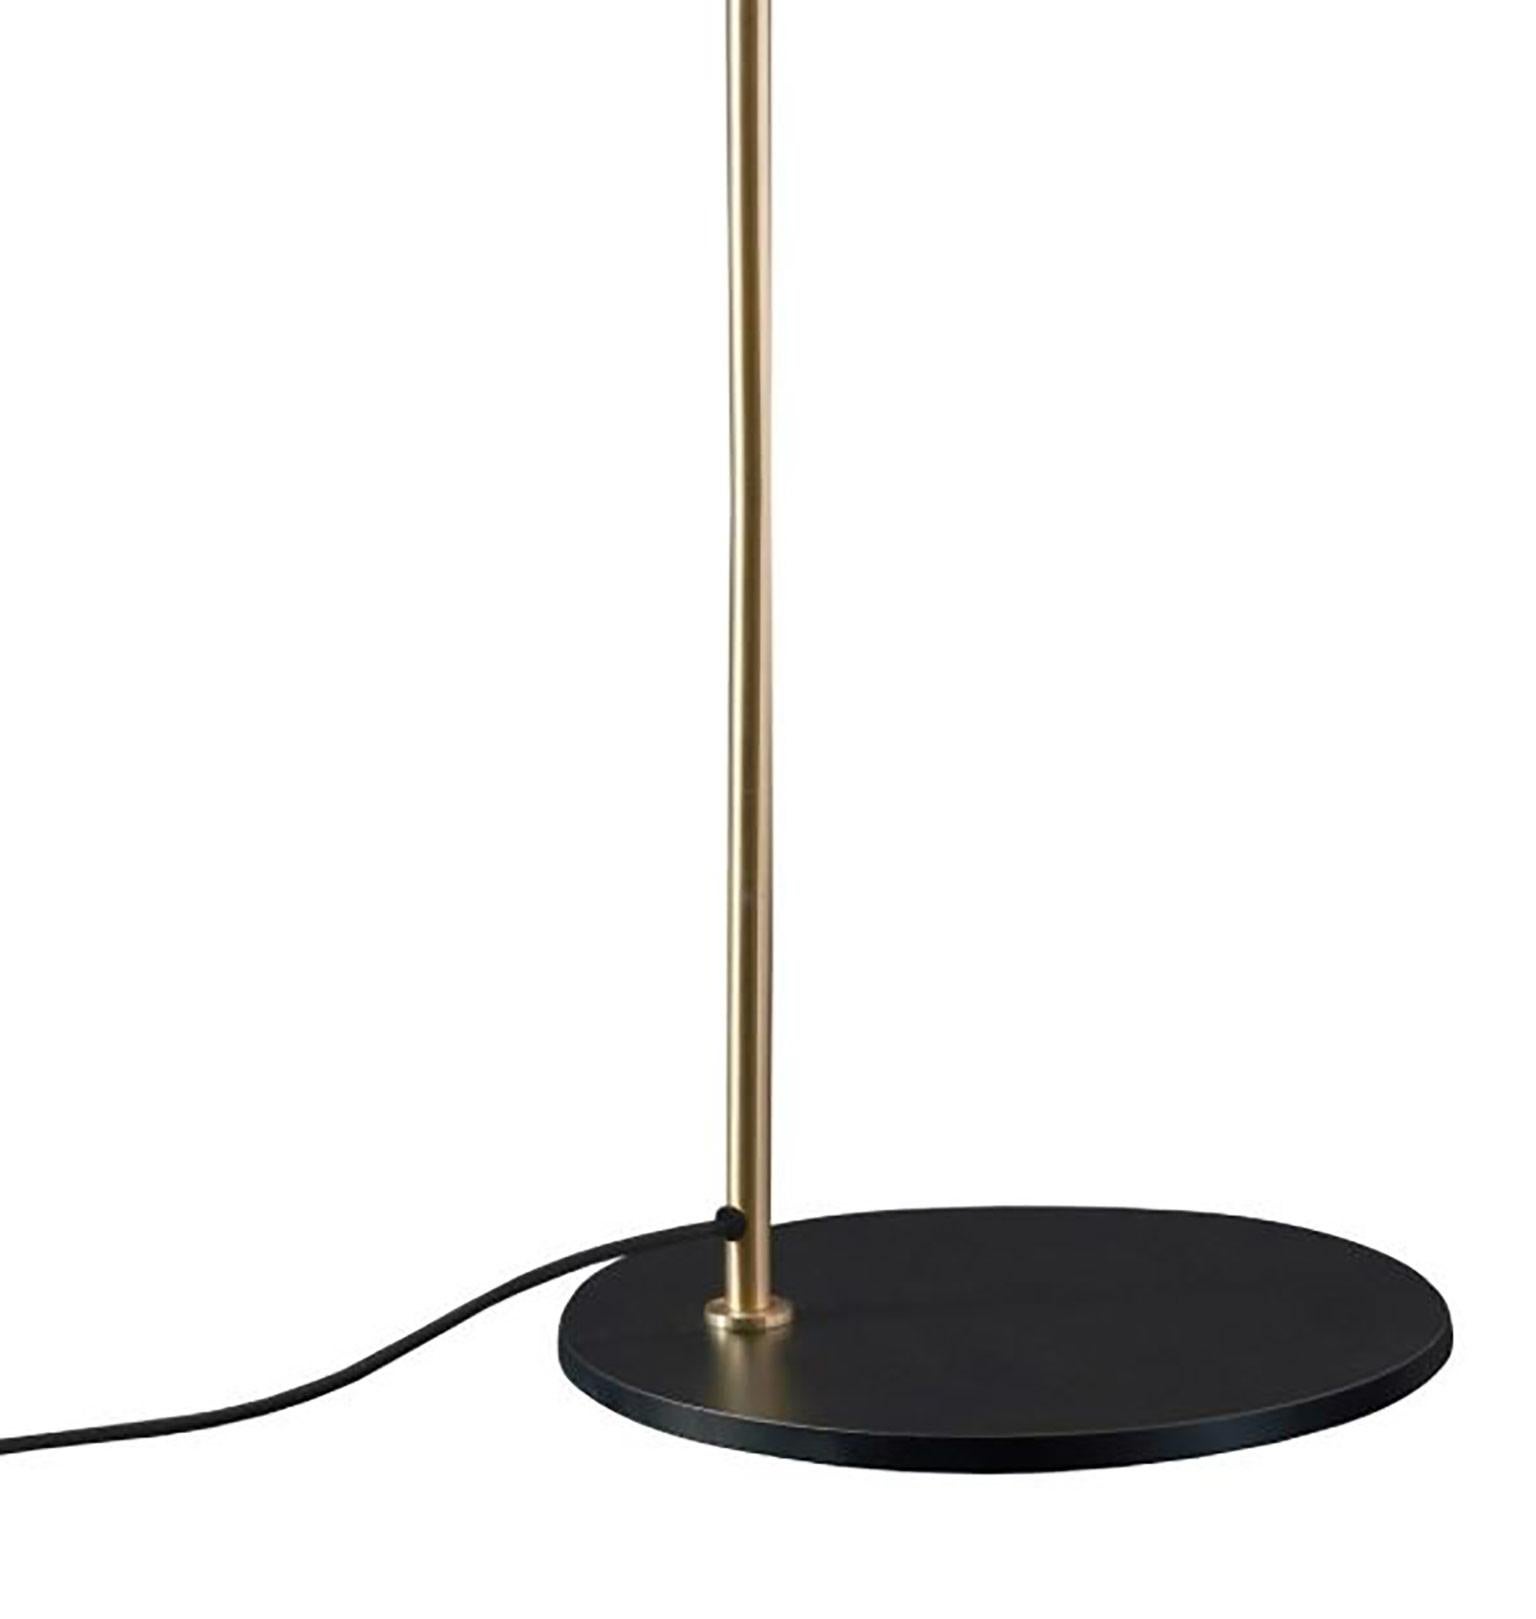 Lampe de table 1953 par Ostuni & Forti pour Oluce. La lampe 1953, conçue par Eleg, rappelle élégamment le style de ces années-là, comme l'utilisation d'un abat-jour de forme cylindrique classique et le contraste subtil entre la tige et l'intérieur